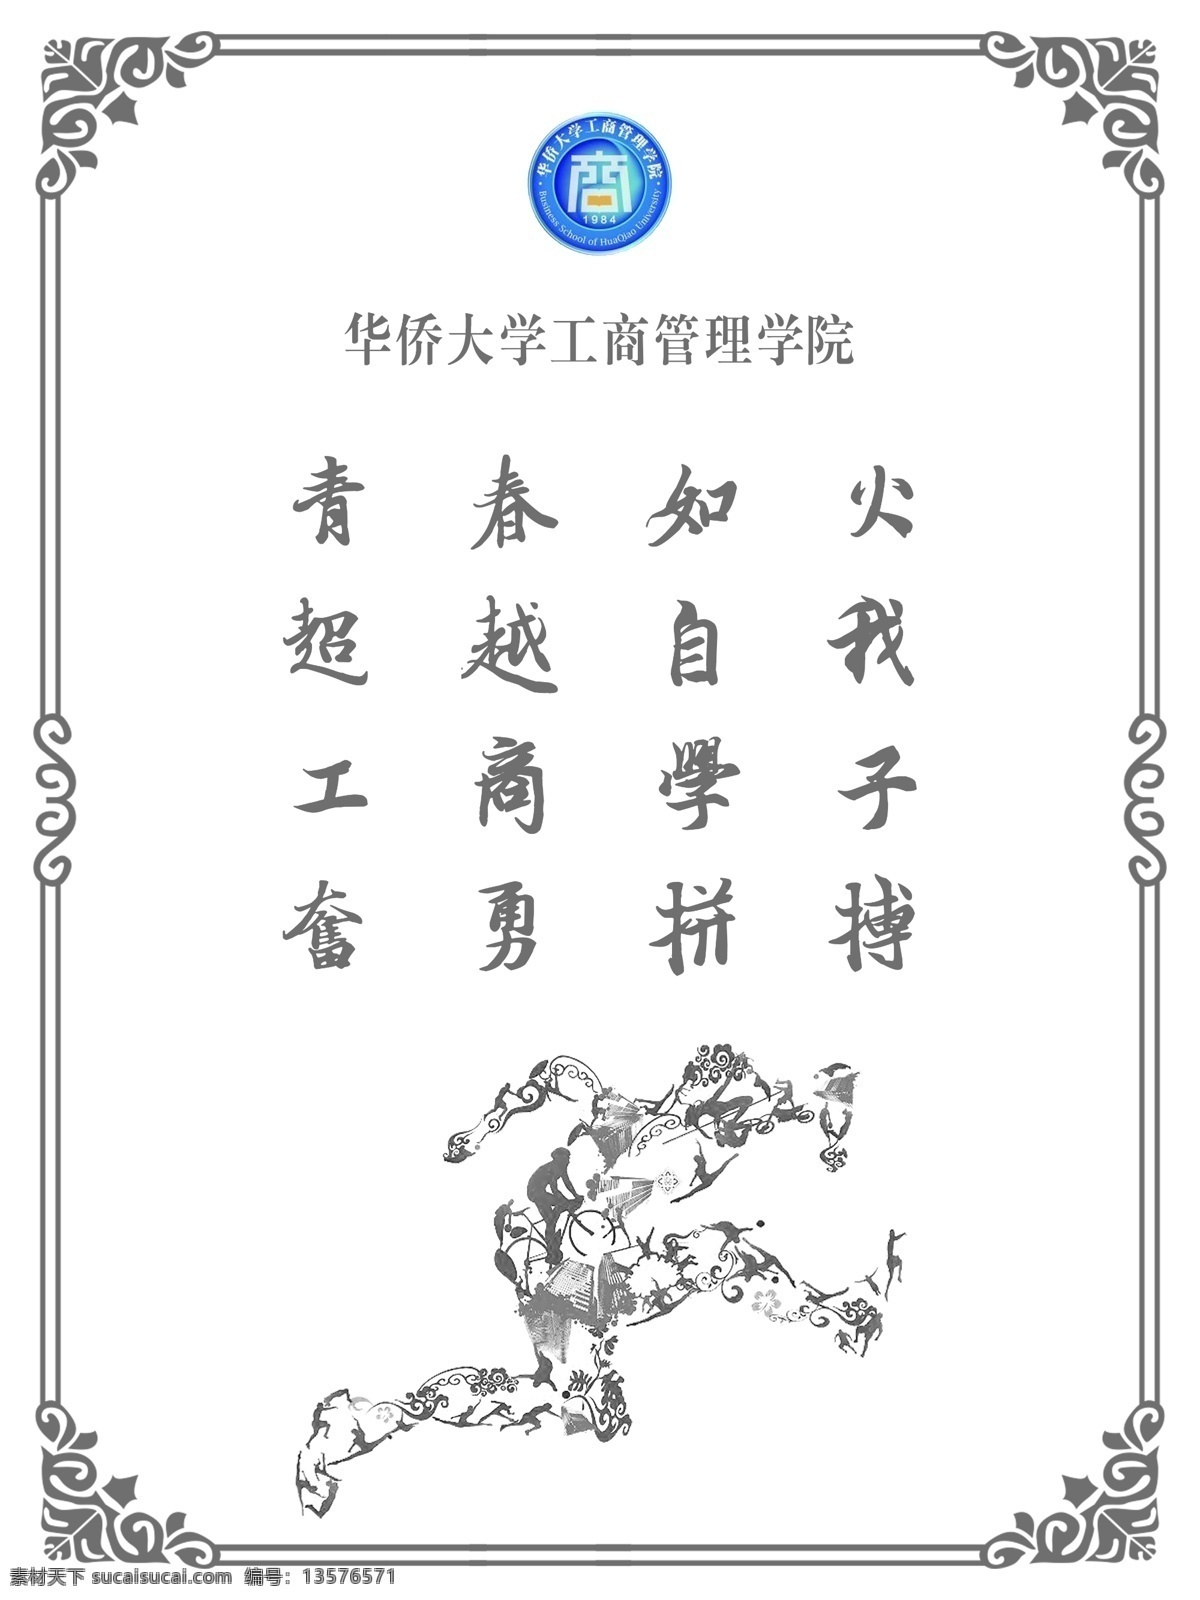 运动会展板 运动会 华侨大学 logo 边框 矢量运动图